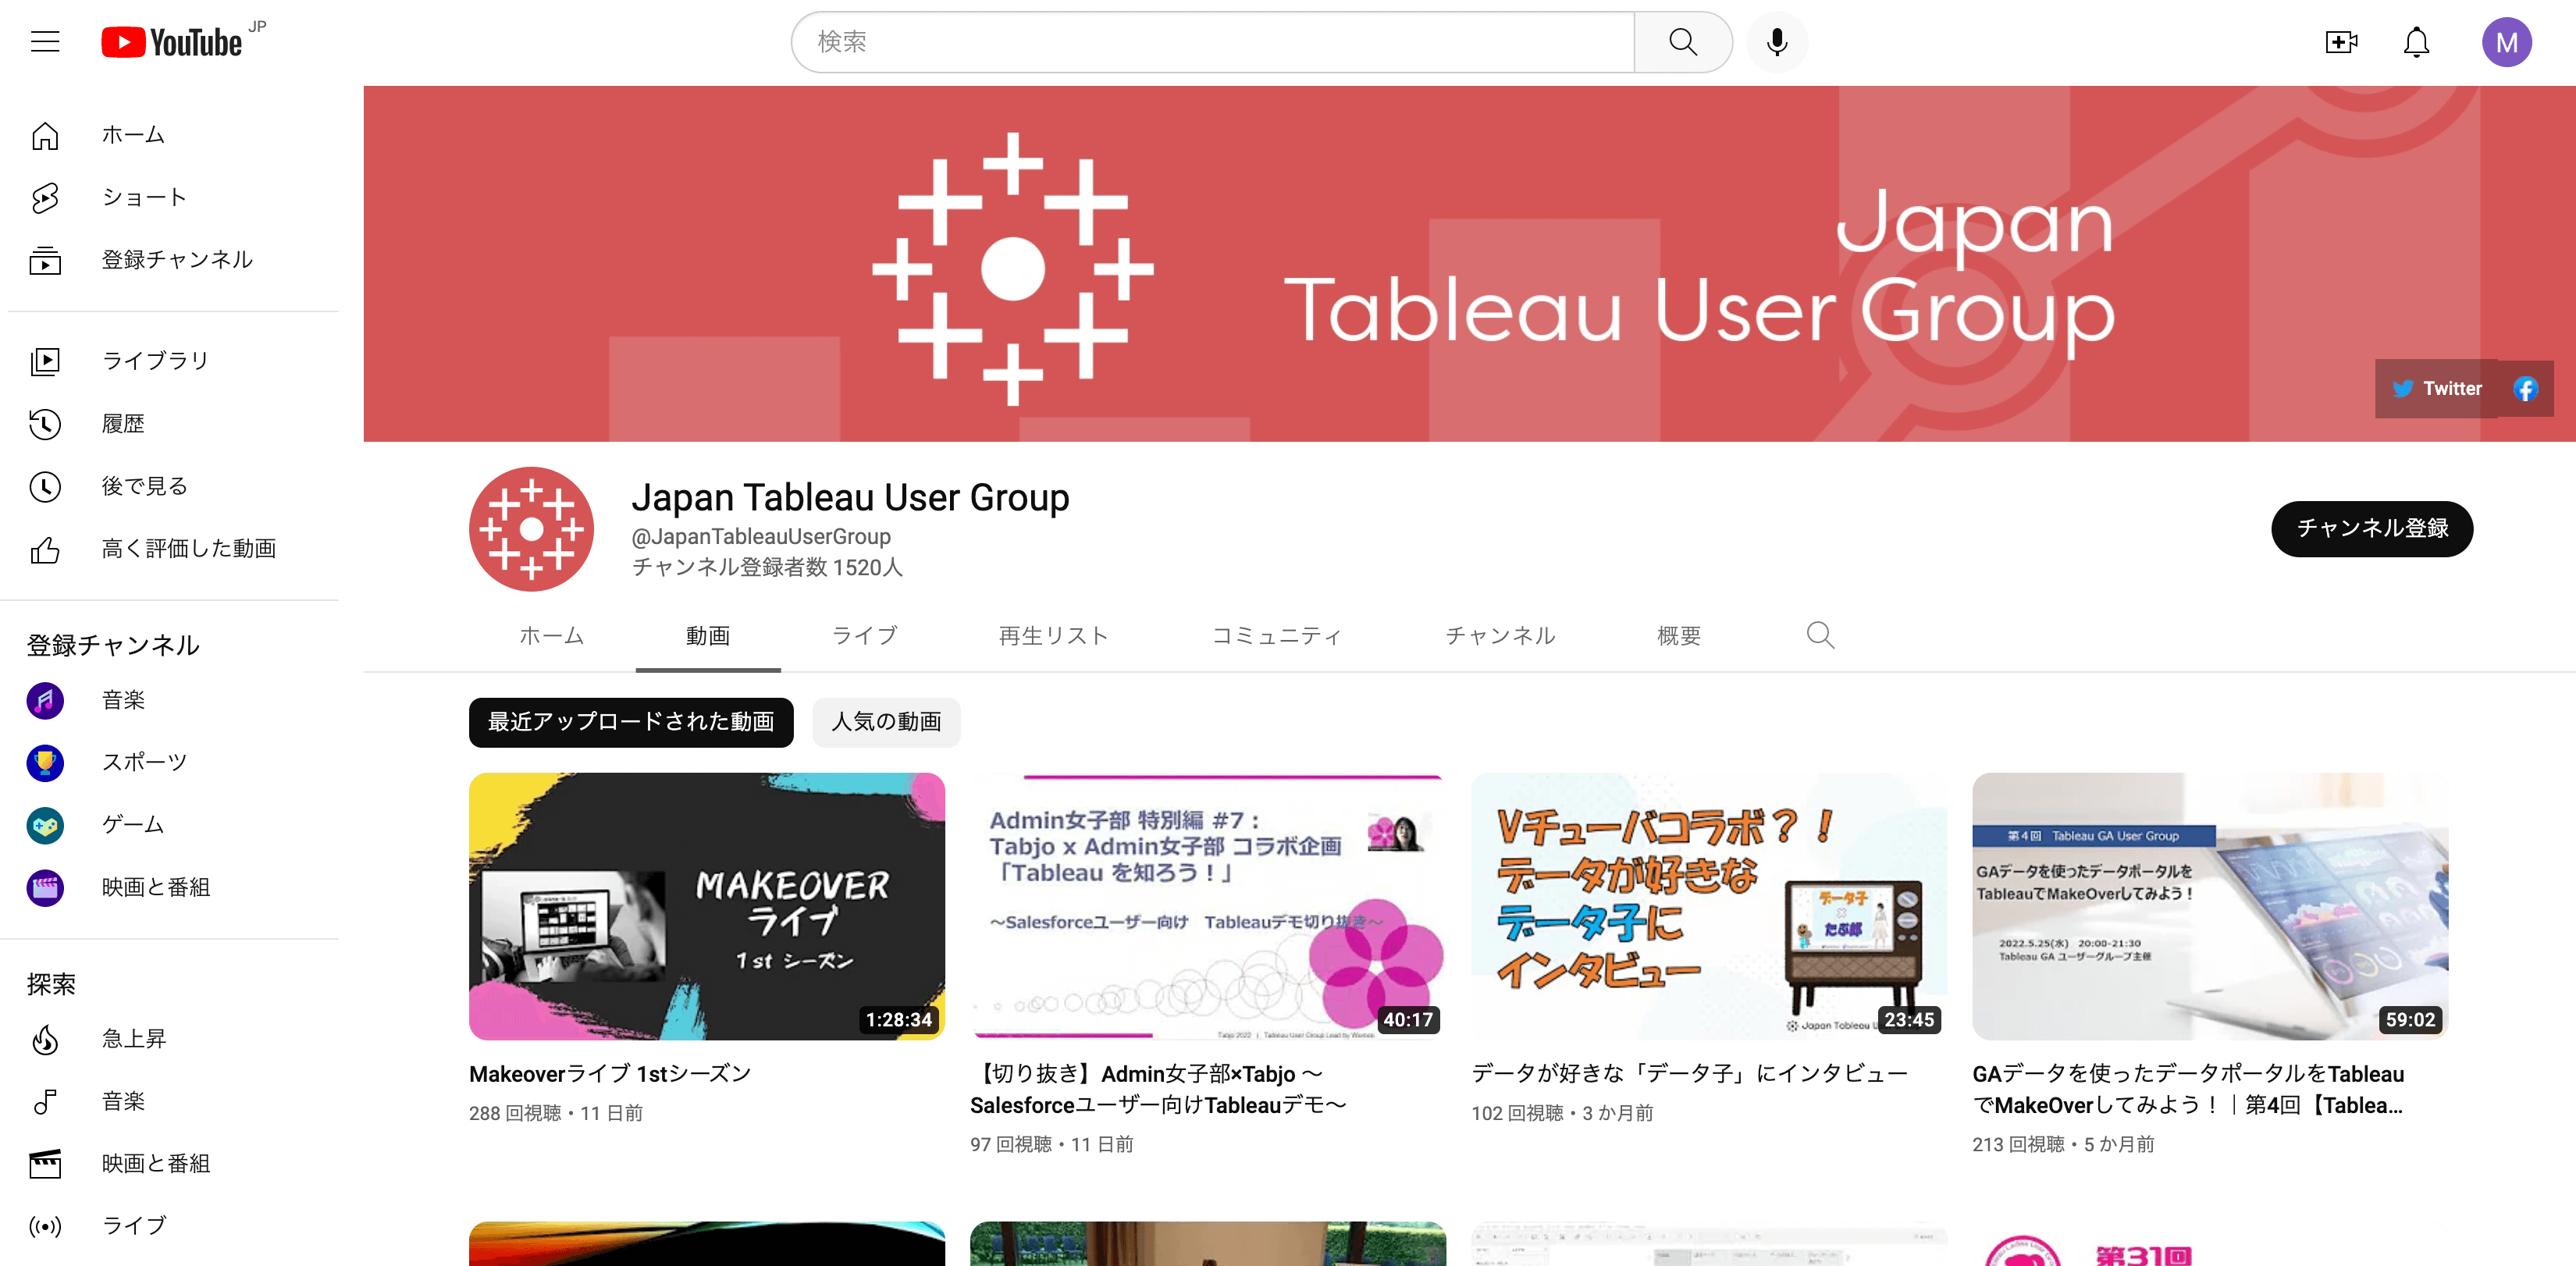 Japan Tableau User Group